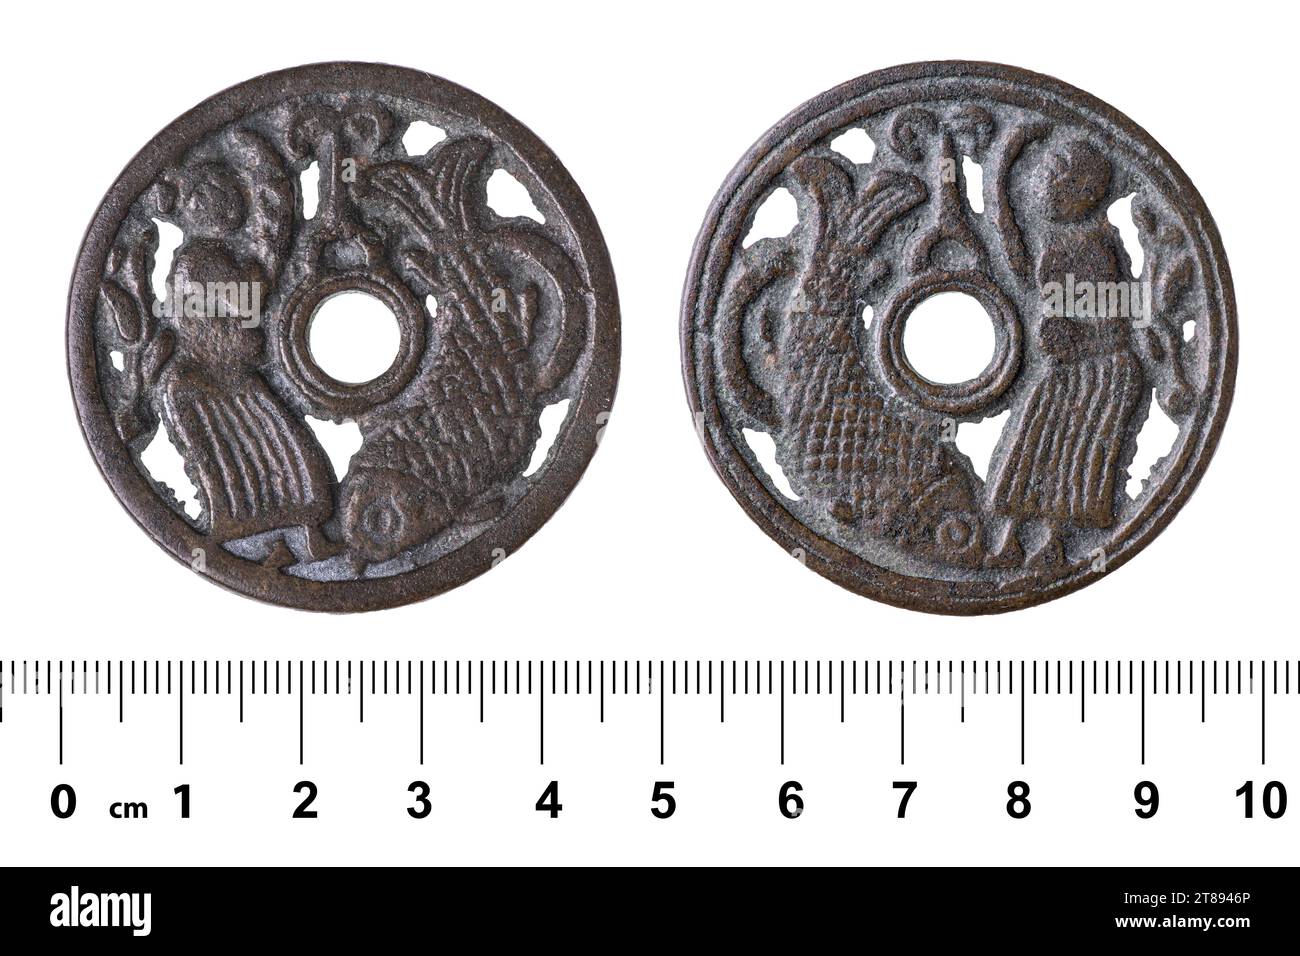 L'antica moneta cinese della dinastia Qing con l'immagine di un uomo e di un pesce (carpa). Isolato su bianco Foto Stock